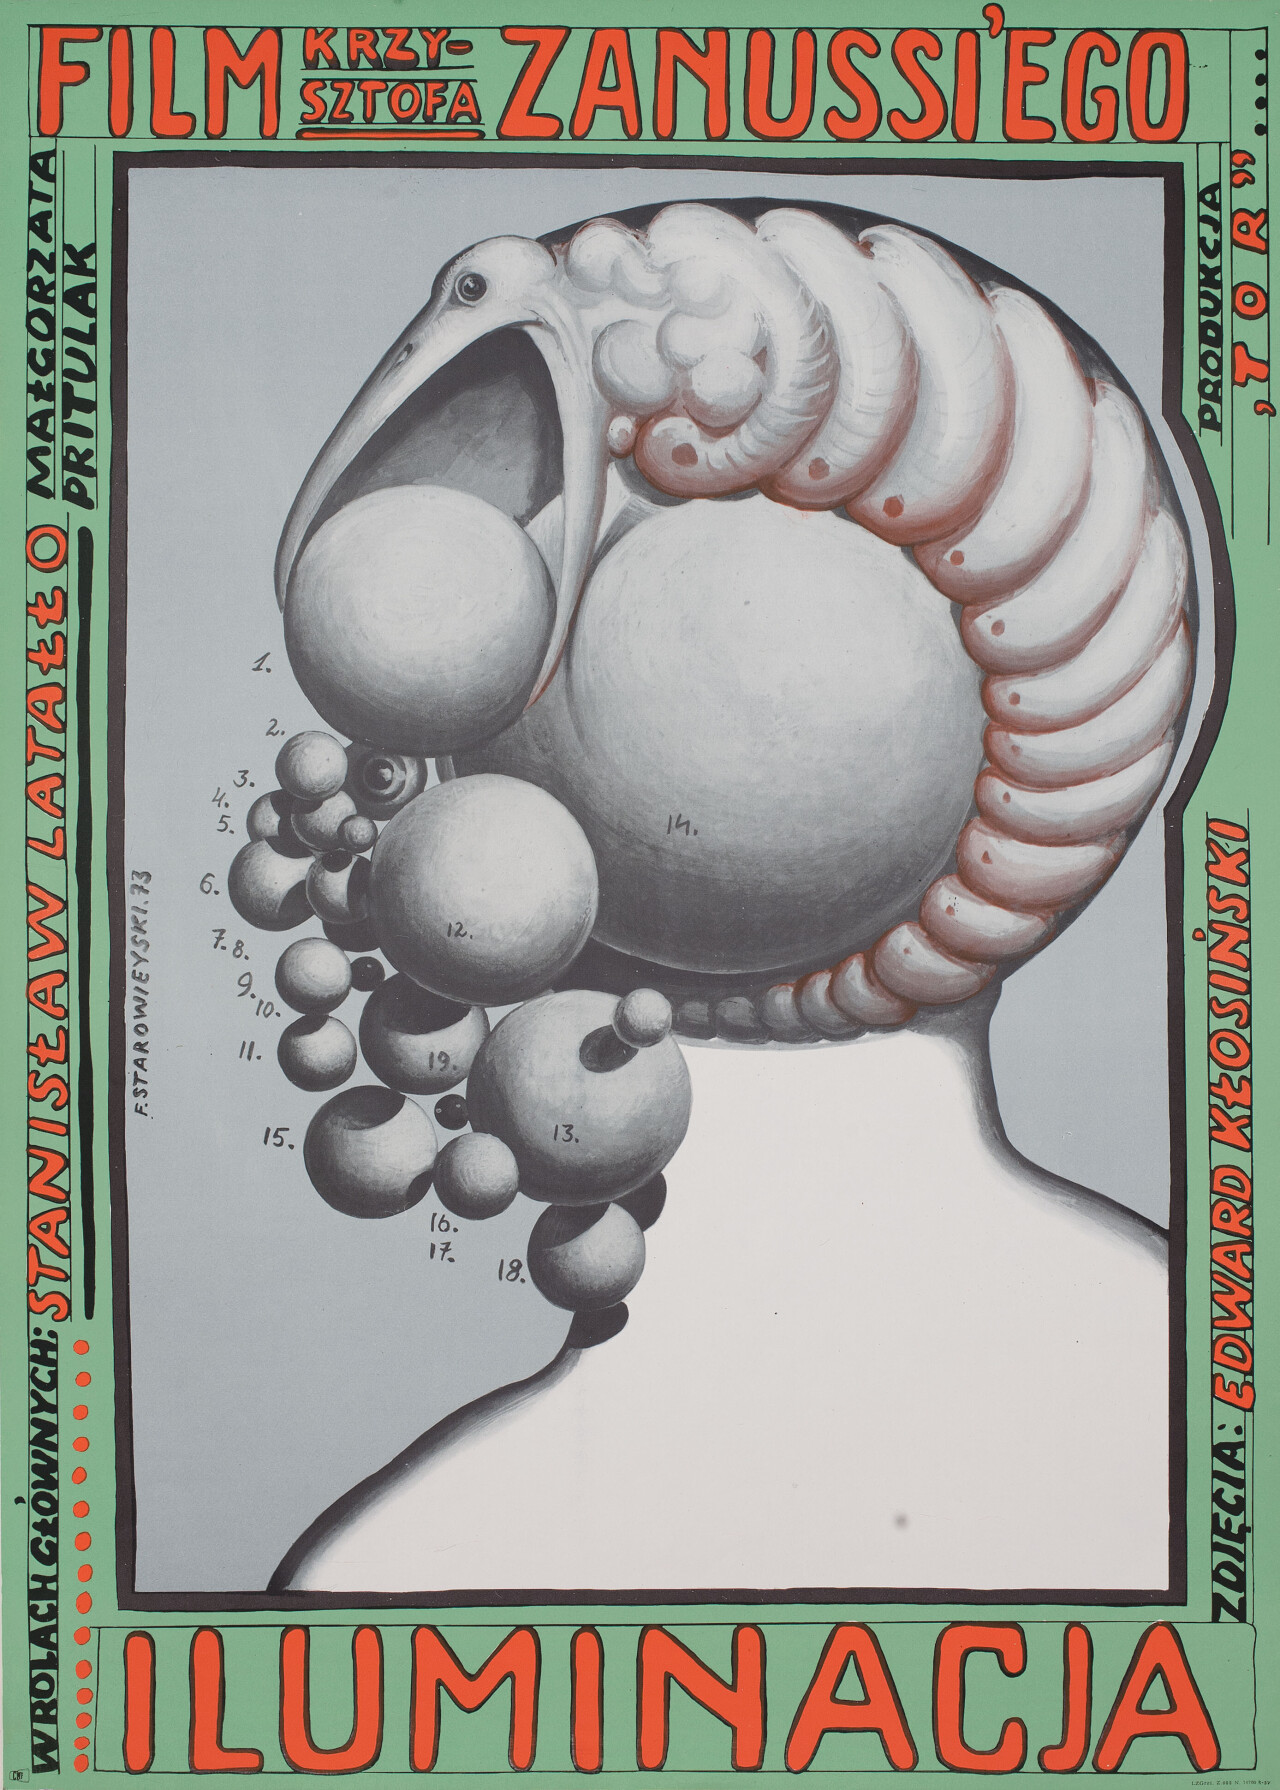 Иллюминация (The Illumination, 1973), режиссёр Кшиштоф Занусси, польский постер к фильму, автор Францишек Старовейский (графический дизайн, 1973 год)